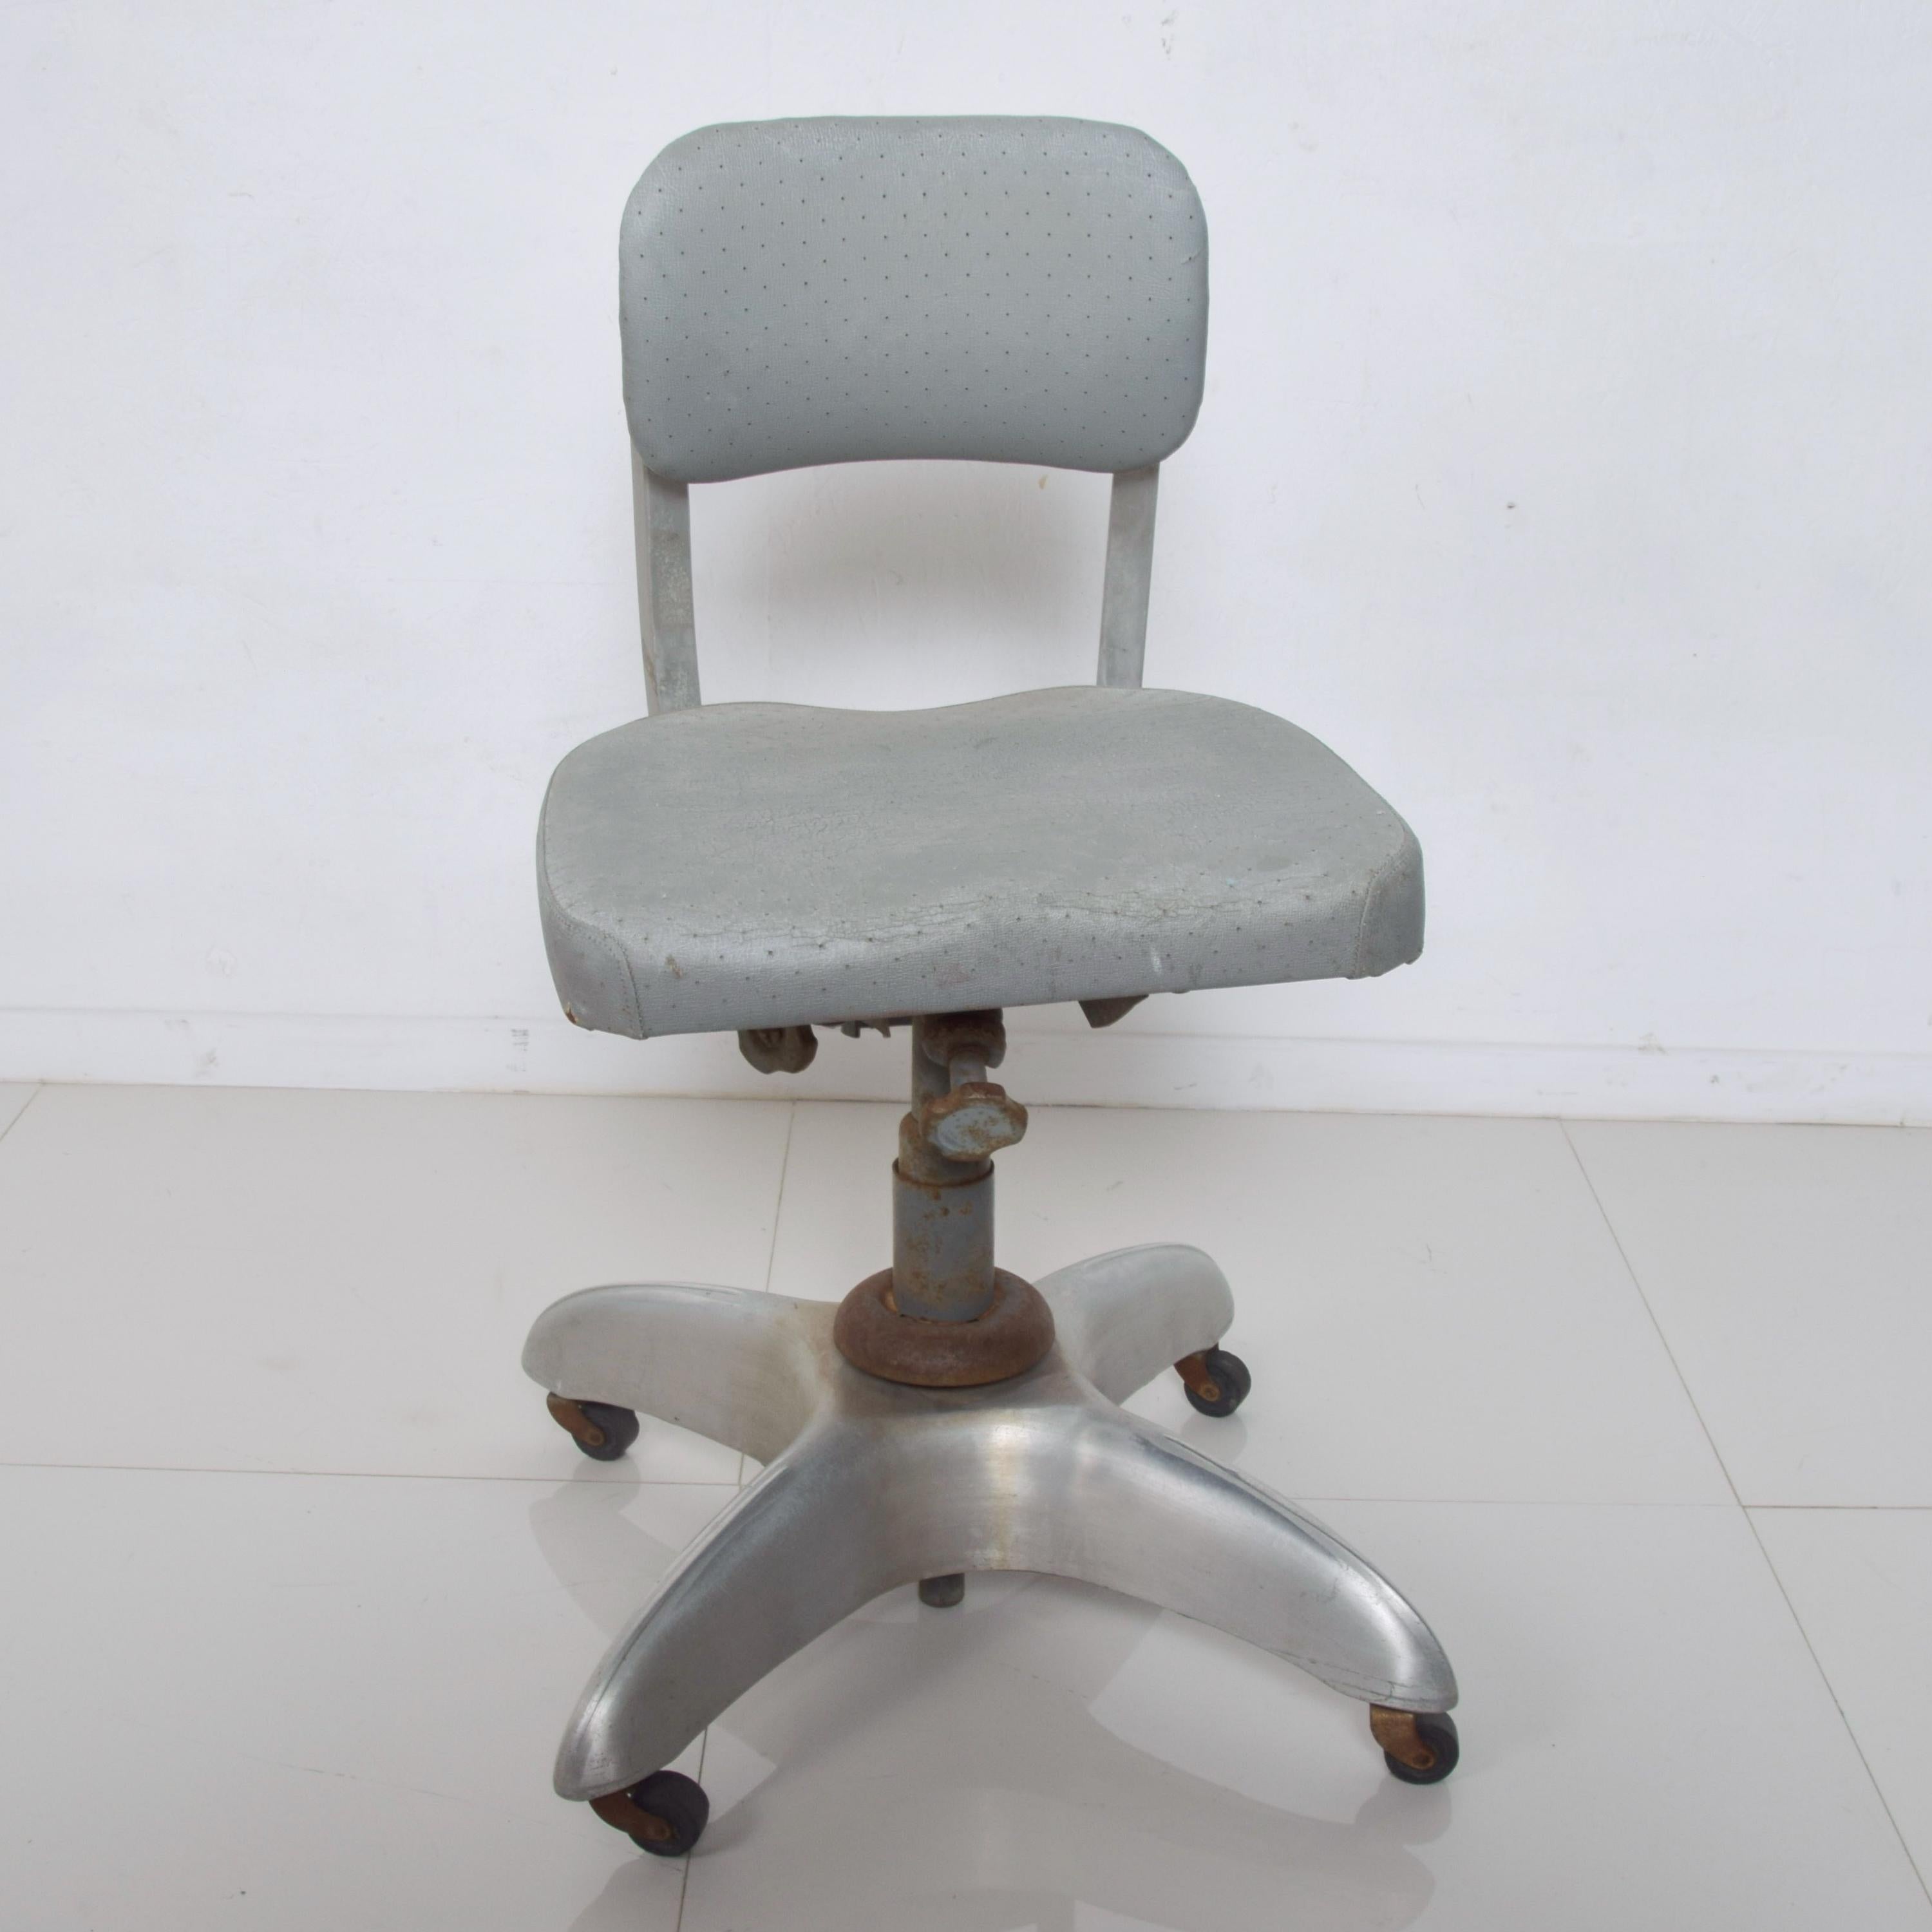 Chaise-citerne
de Gio Ponti produit par GOODFORM Youngstown, Ohio : 1938 Industrial Swivel Tanker Vintage Office Desk Chair
conçu par Gio Ponti pour le Design/One à Milan, comme un symbole de modernité.
Le modèle a été édité et produit par GoodForm